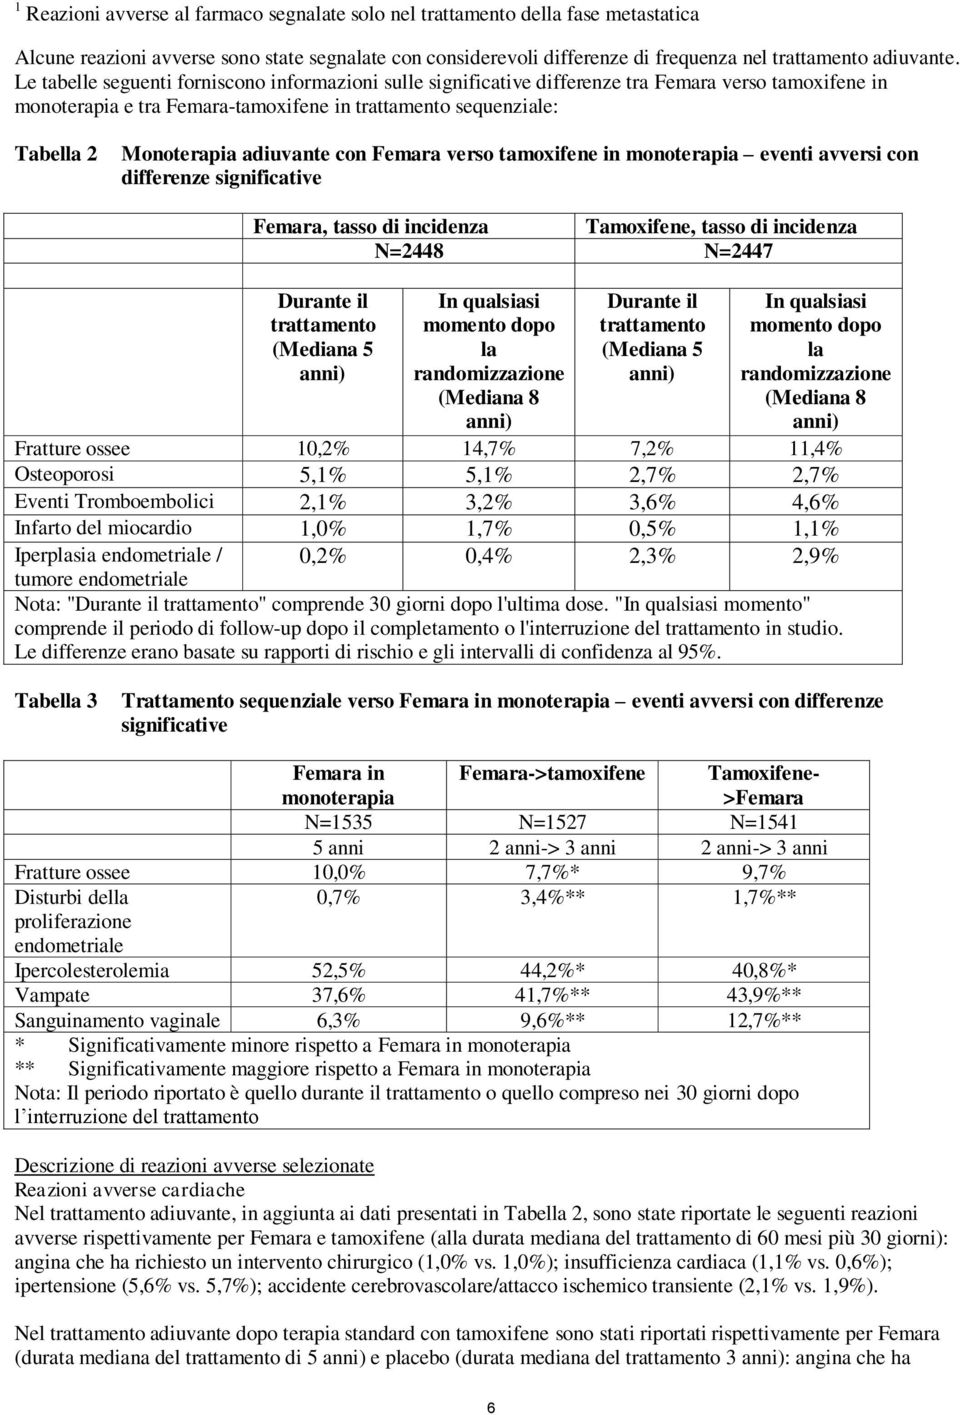 adiuvante con Femara verso tamoxifene in monoterapia eventi avversi con differenze significative Femara, tasso di incidenza Tamoxifene, tasso di incidenza N=2448 N=2447 Durante il trattamento